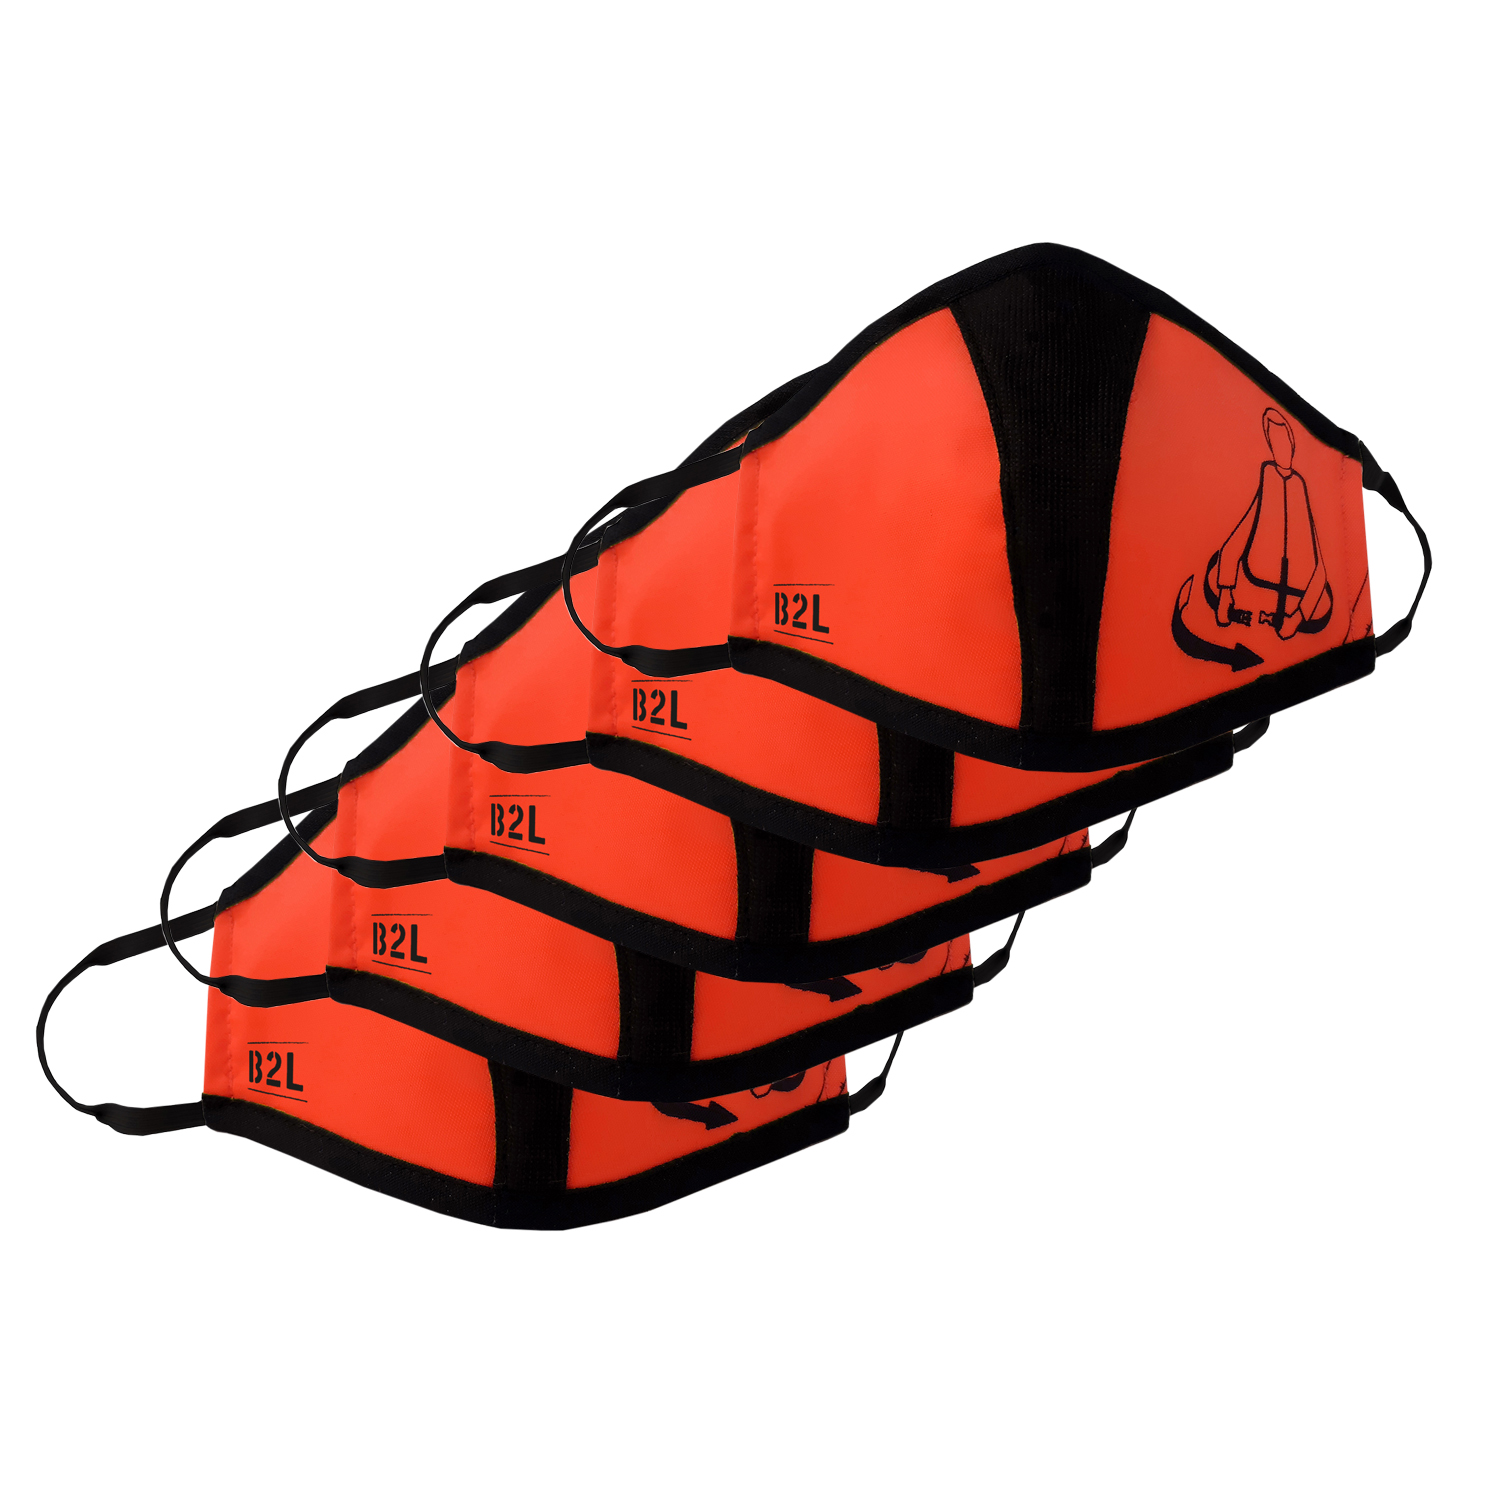 Travel Safe Mask red-orange 5er Pack – Gesichtsmasken